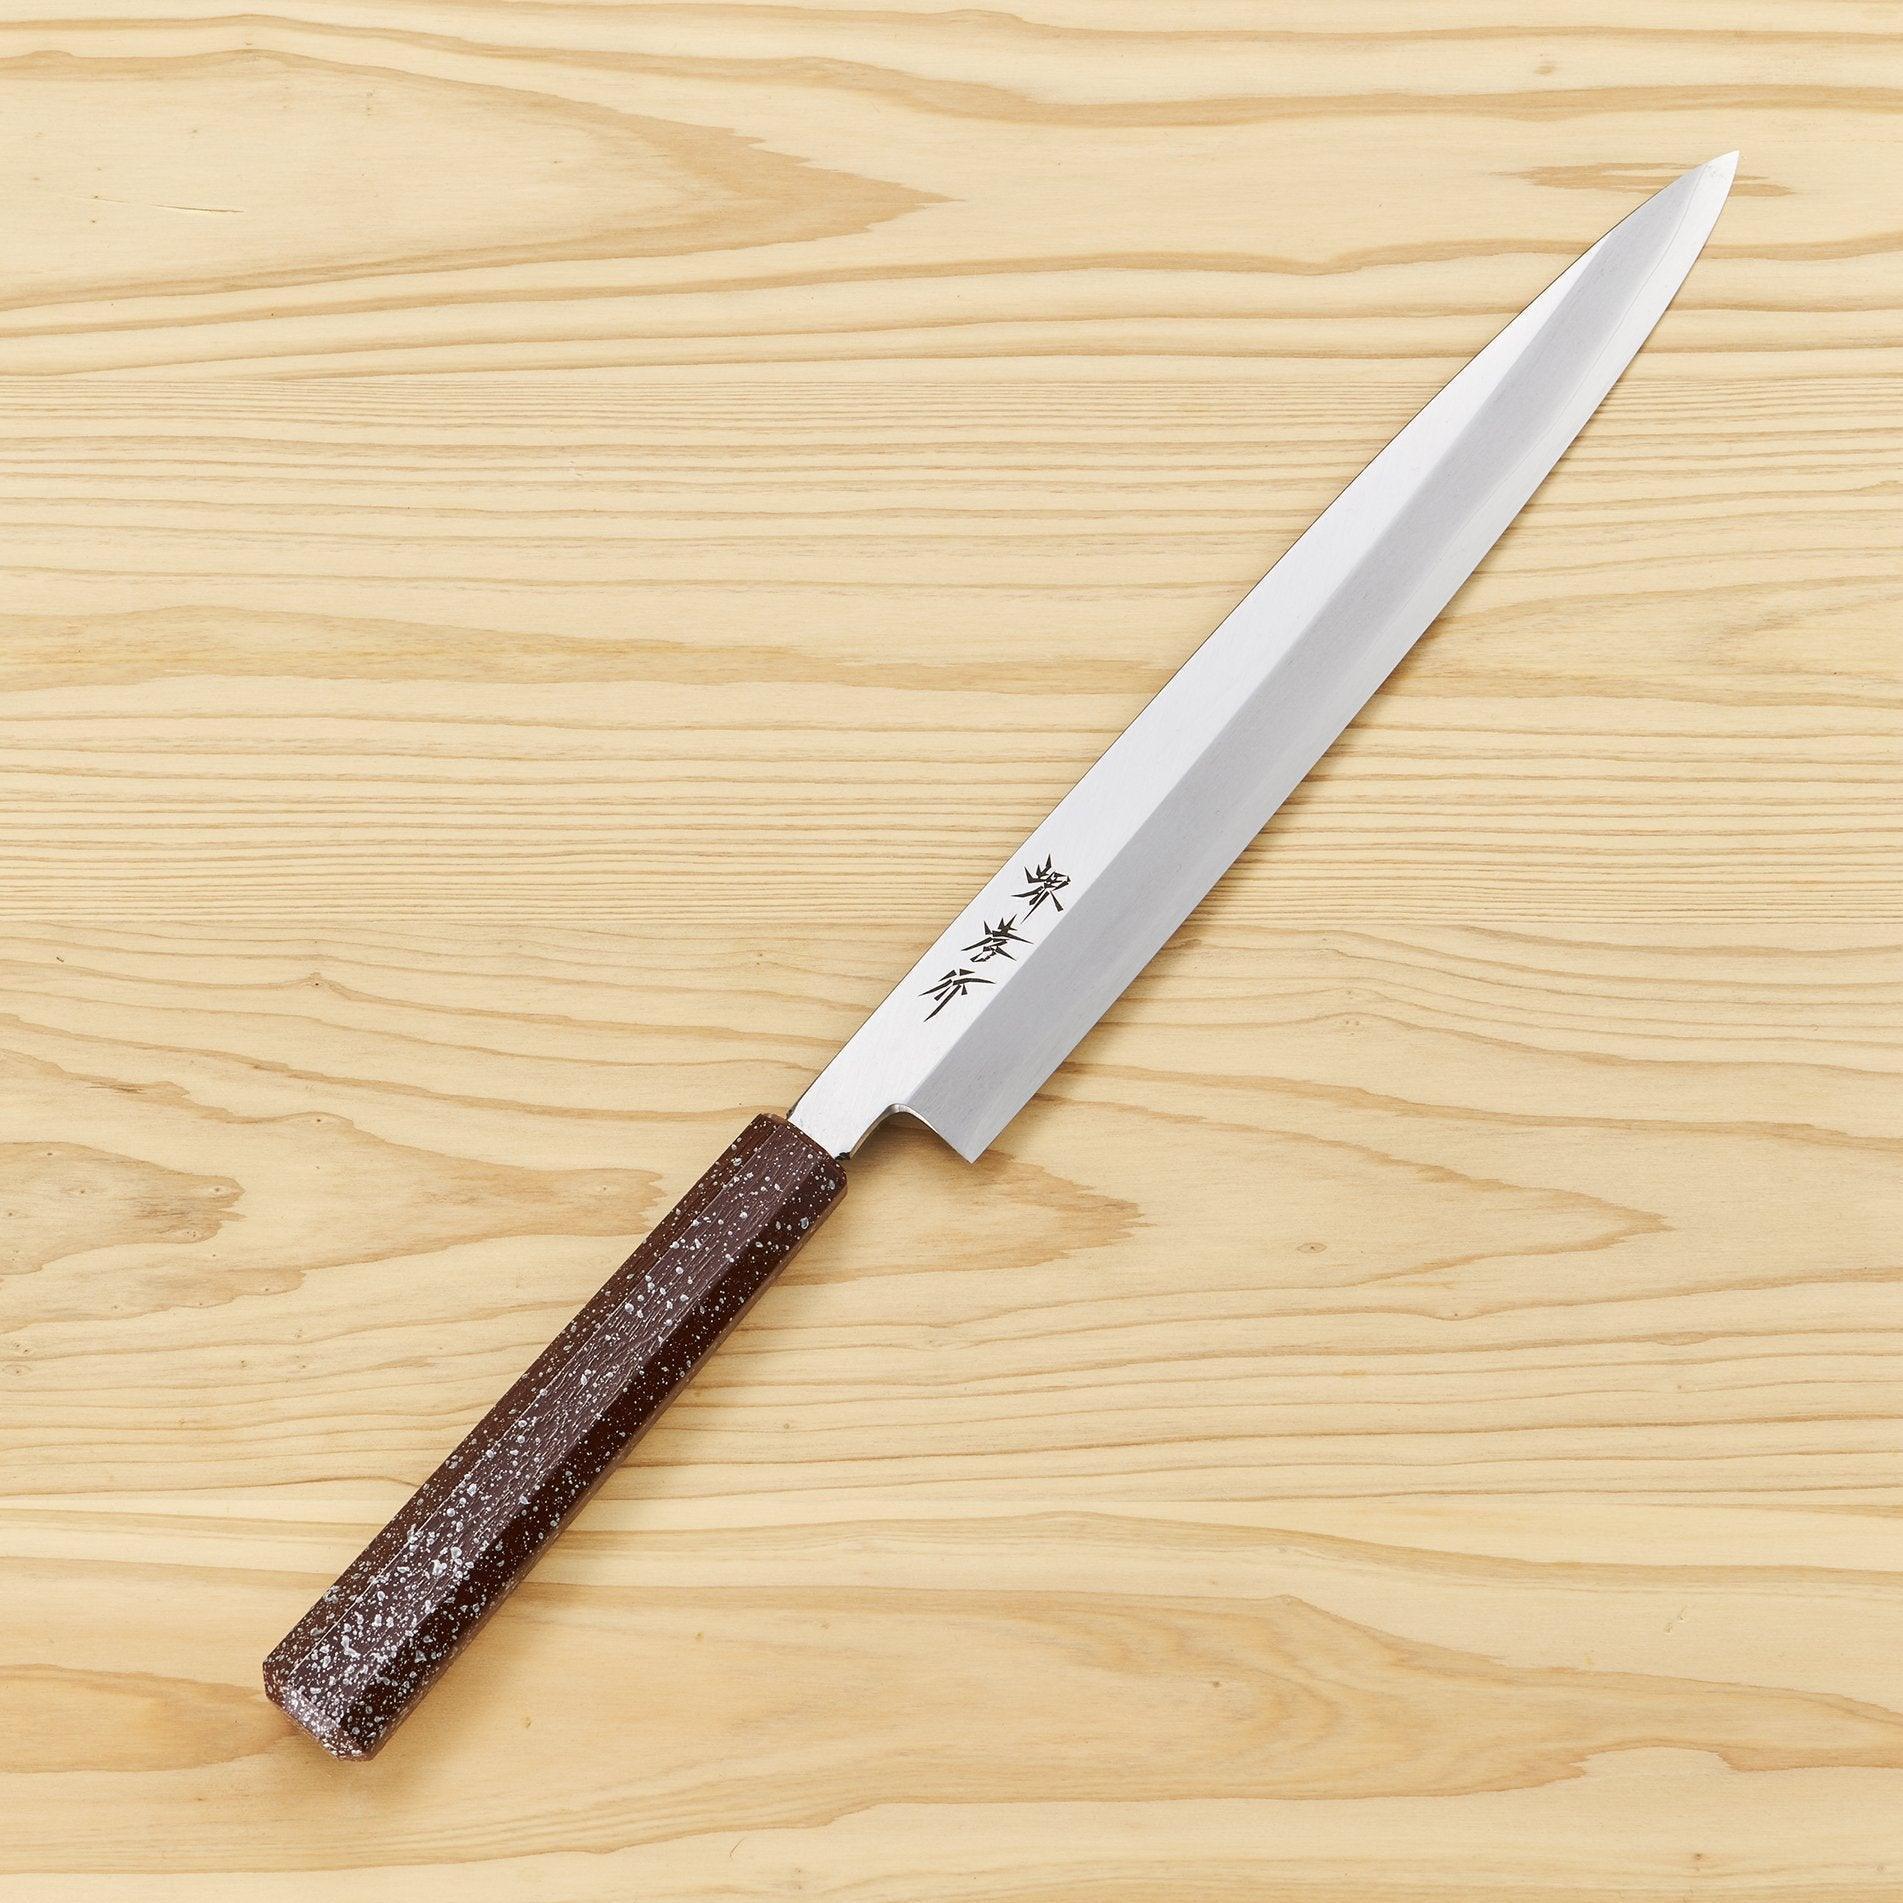 Sakai Takayuki Nanairo Maroon Yanagiba 240mm-Knife-Sakai Takayuki-Carbon Knife Co